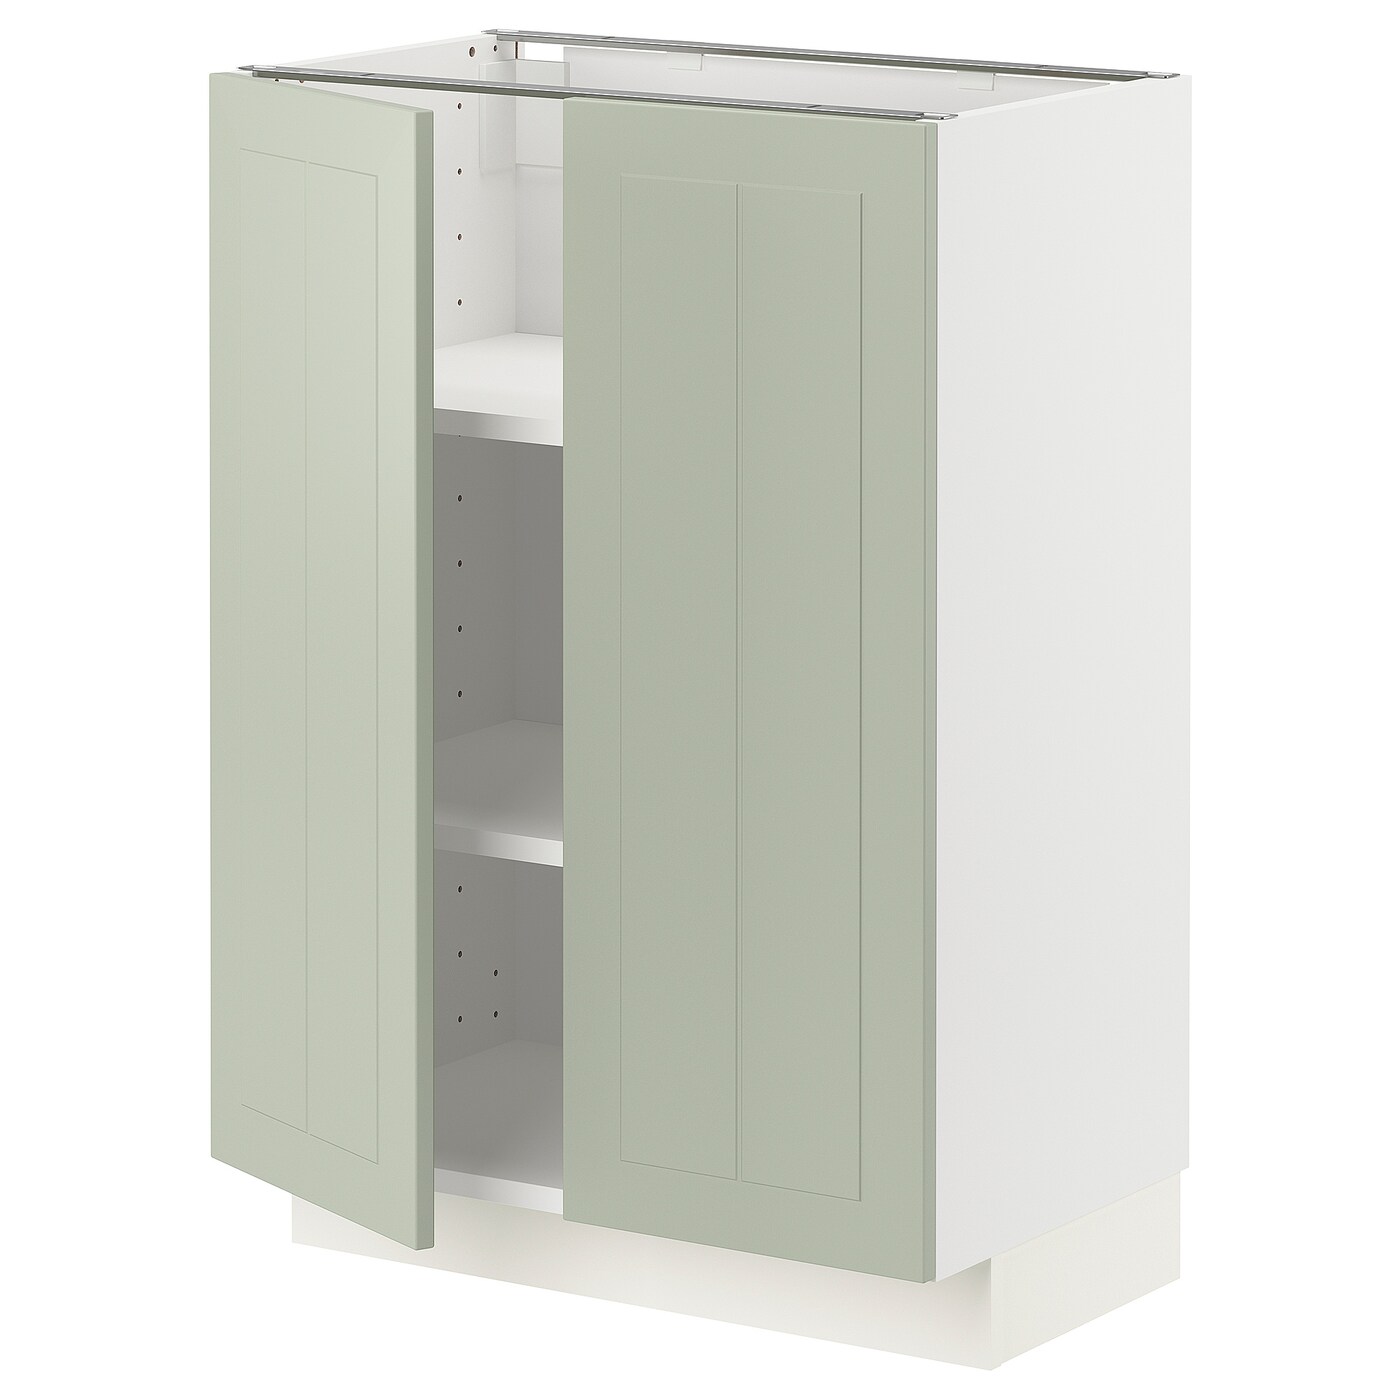 Напольный шкаф - IKEA METOD, 88x39x60см, белый/светло-зеленый, МЕТОД ИКЕА